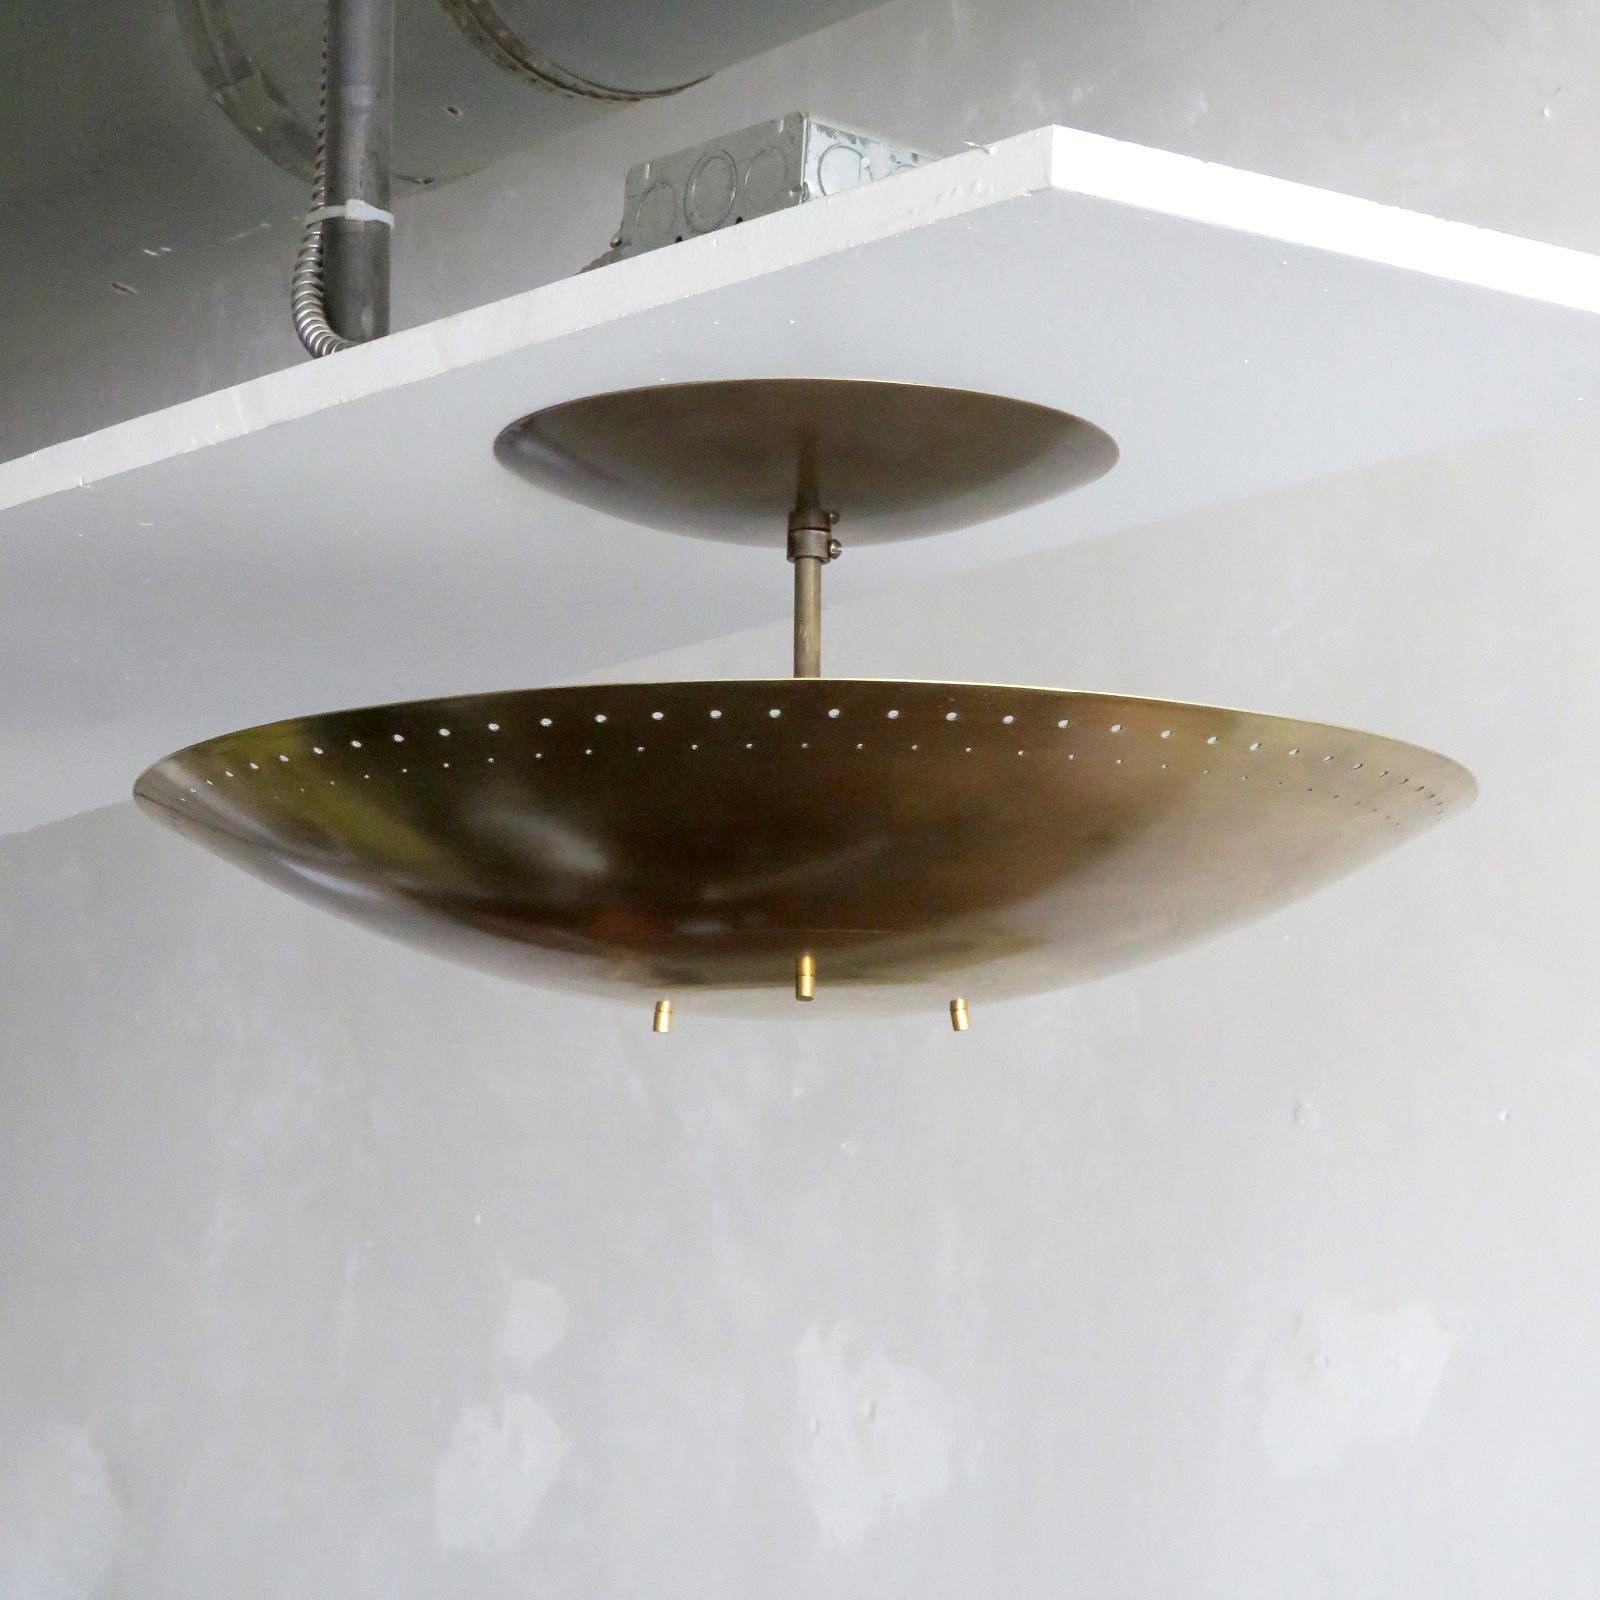 Elégante lampe de plafond Utah-18 conçue par Gallery L7, fabriquée et finie à la main à Los Angeles en laiton américain, disque suspendu perforé en laiton brut et vieilli (18 pouces de diamètre). Six douilles E12 par luminaire, puissance maximale de